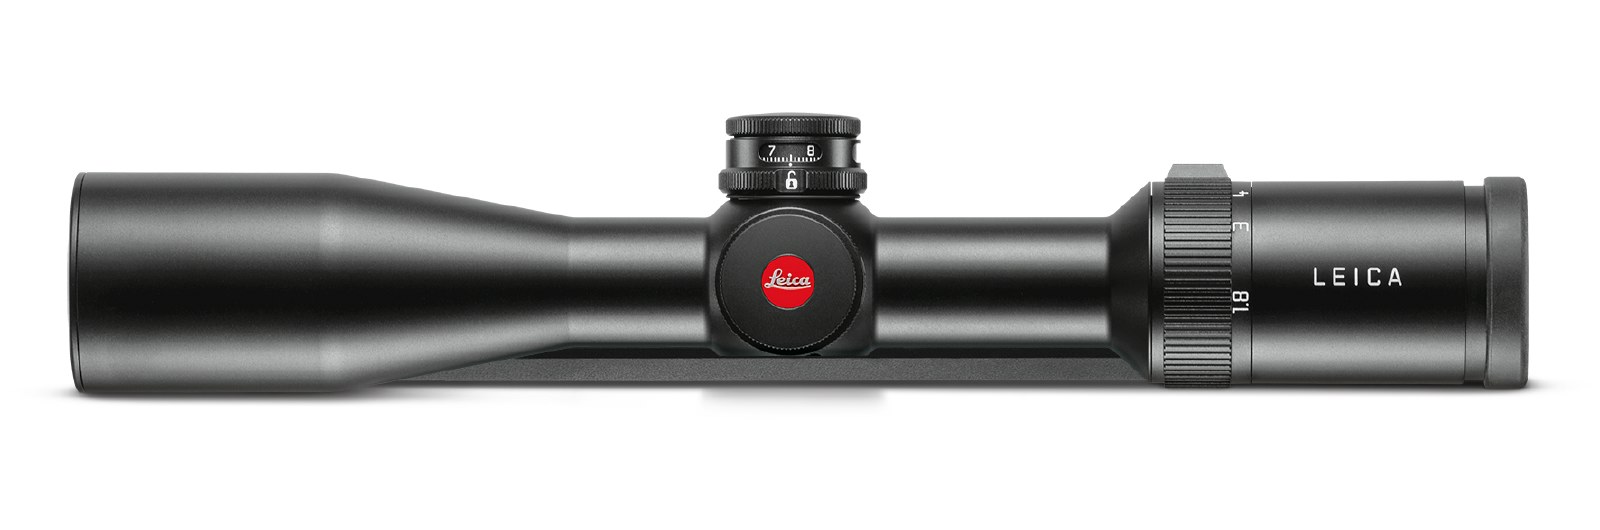 Extrem kompakt und absolut leistungsstrak – Das Leica Fortis 6 Zielfernrohr mit einer Vergrößerung von 1,8-12 und einem Objektivdurchmesser von 42.